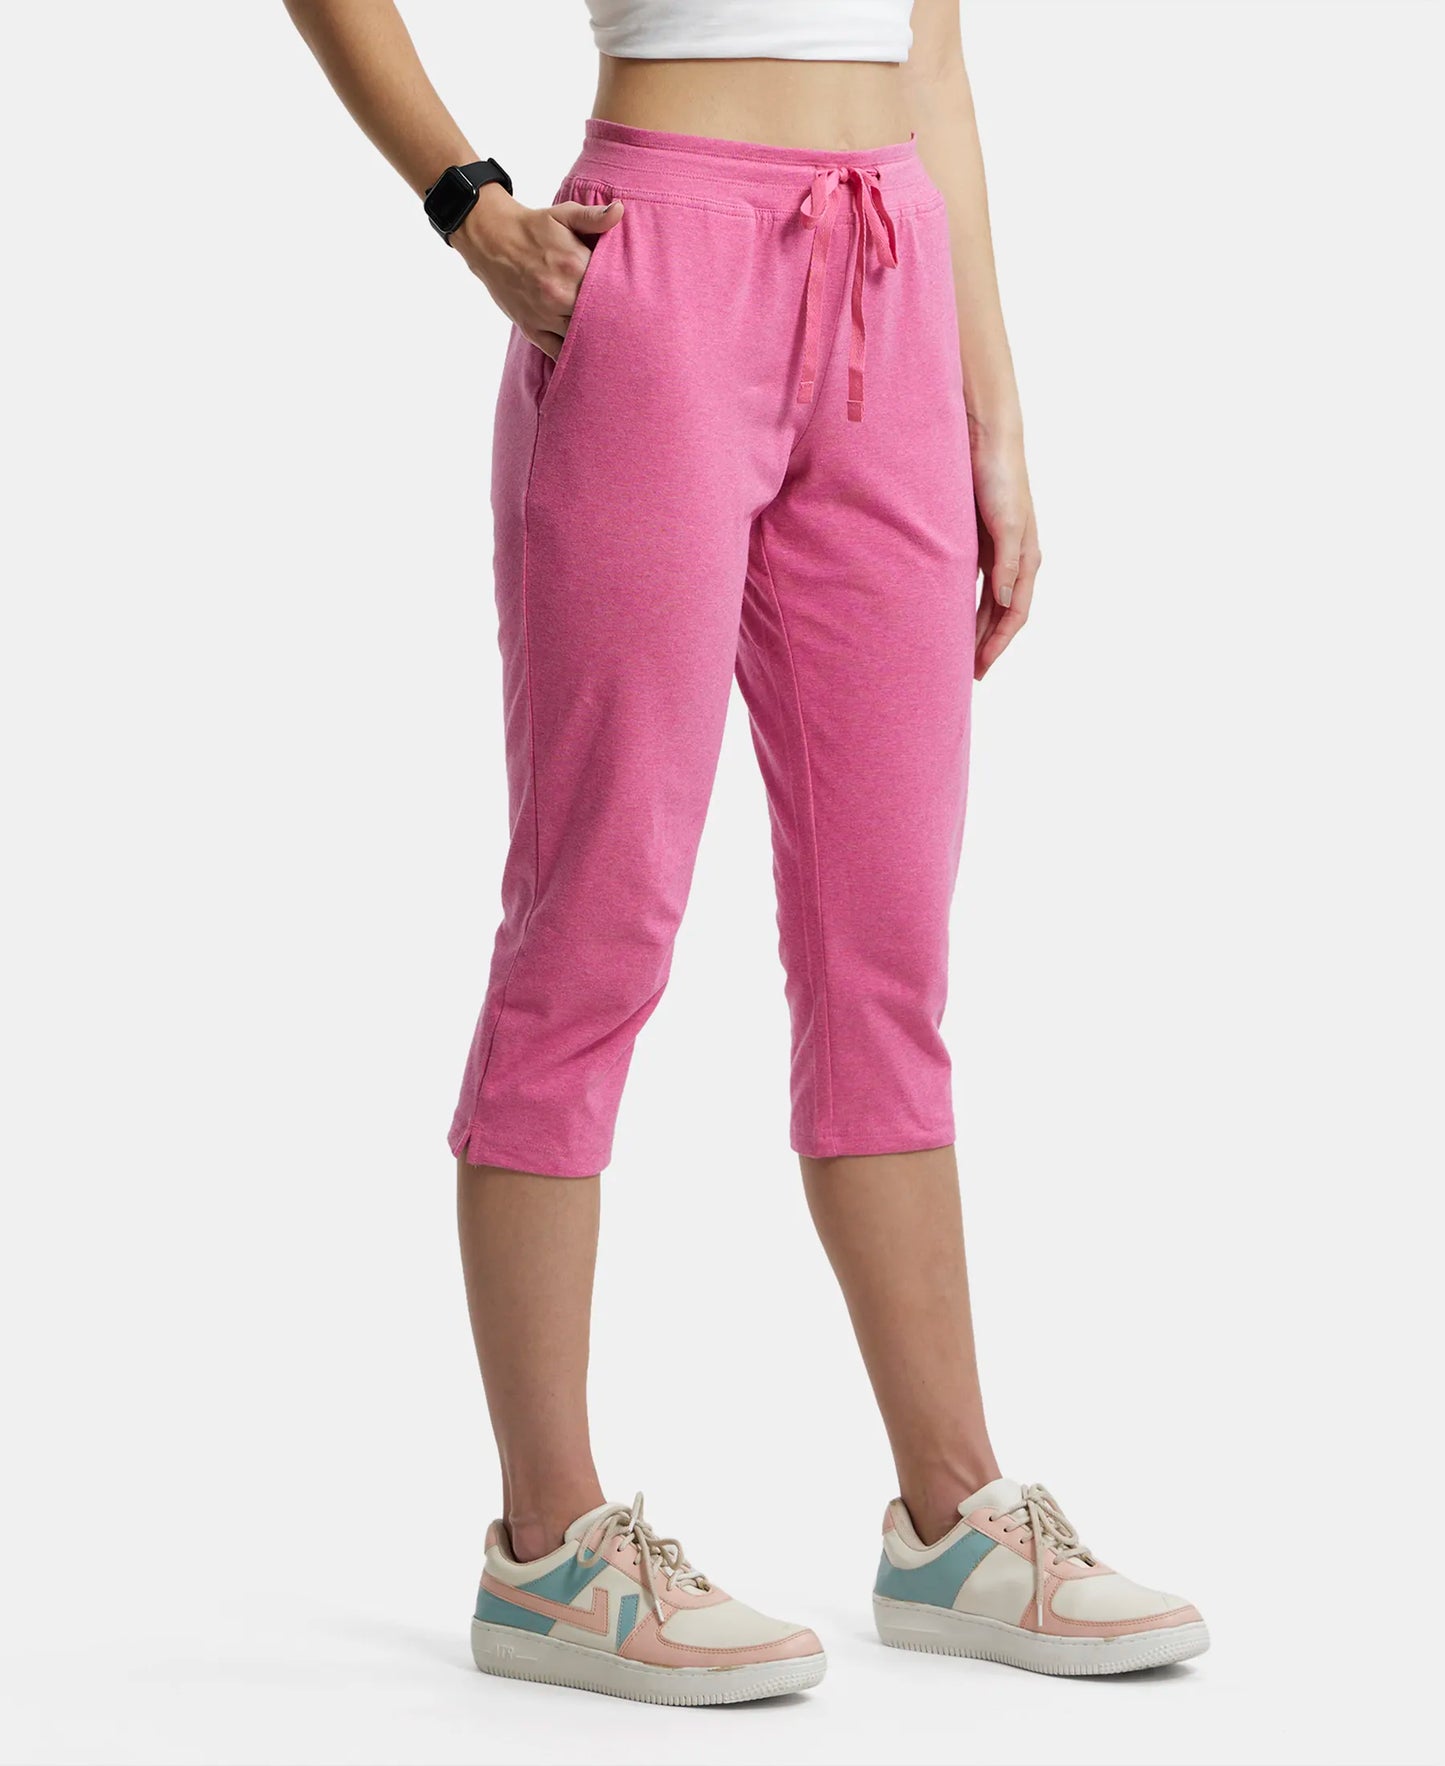 Super Combed Cotton Elastane Slim Fit Printed Capri with Side Pockets - Ibis Rose Melange-2